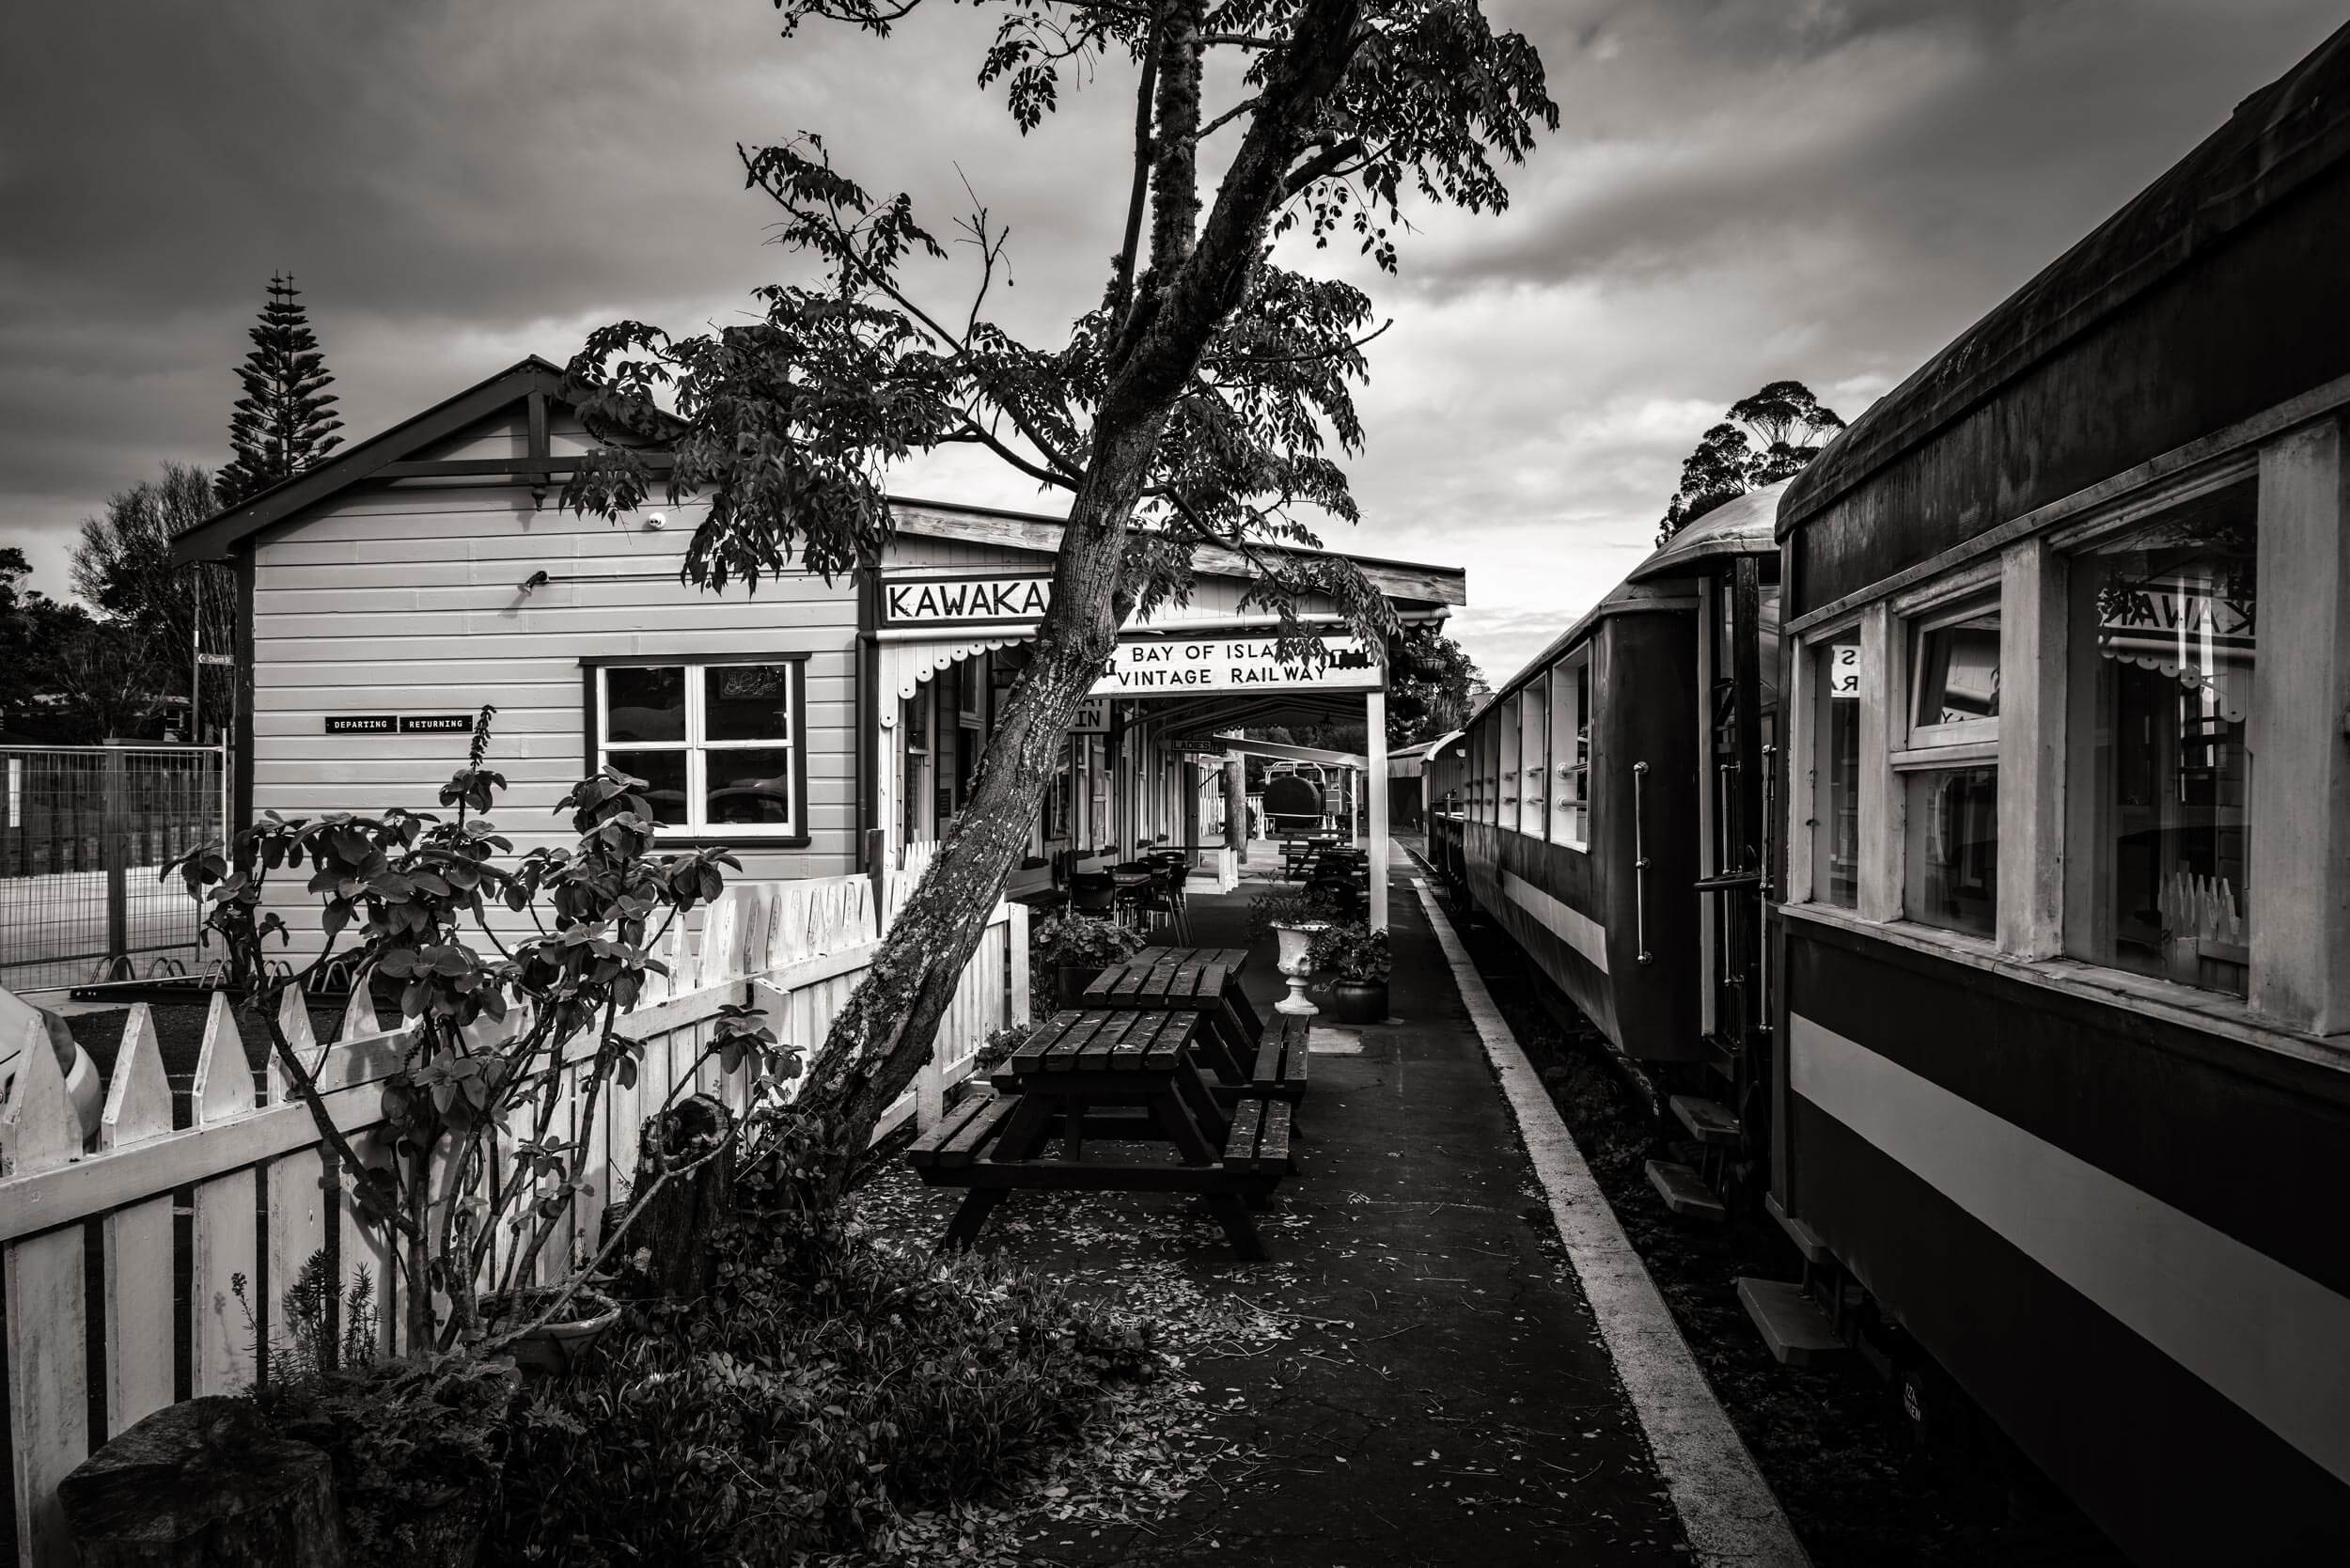 Bay of Islands Vintage Railway, Kawakawa